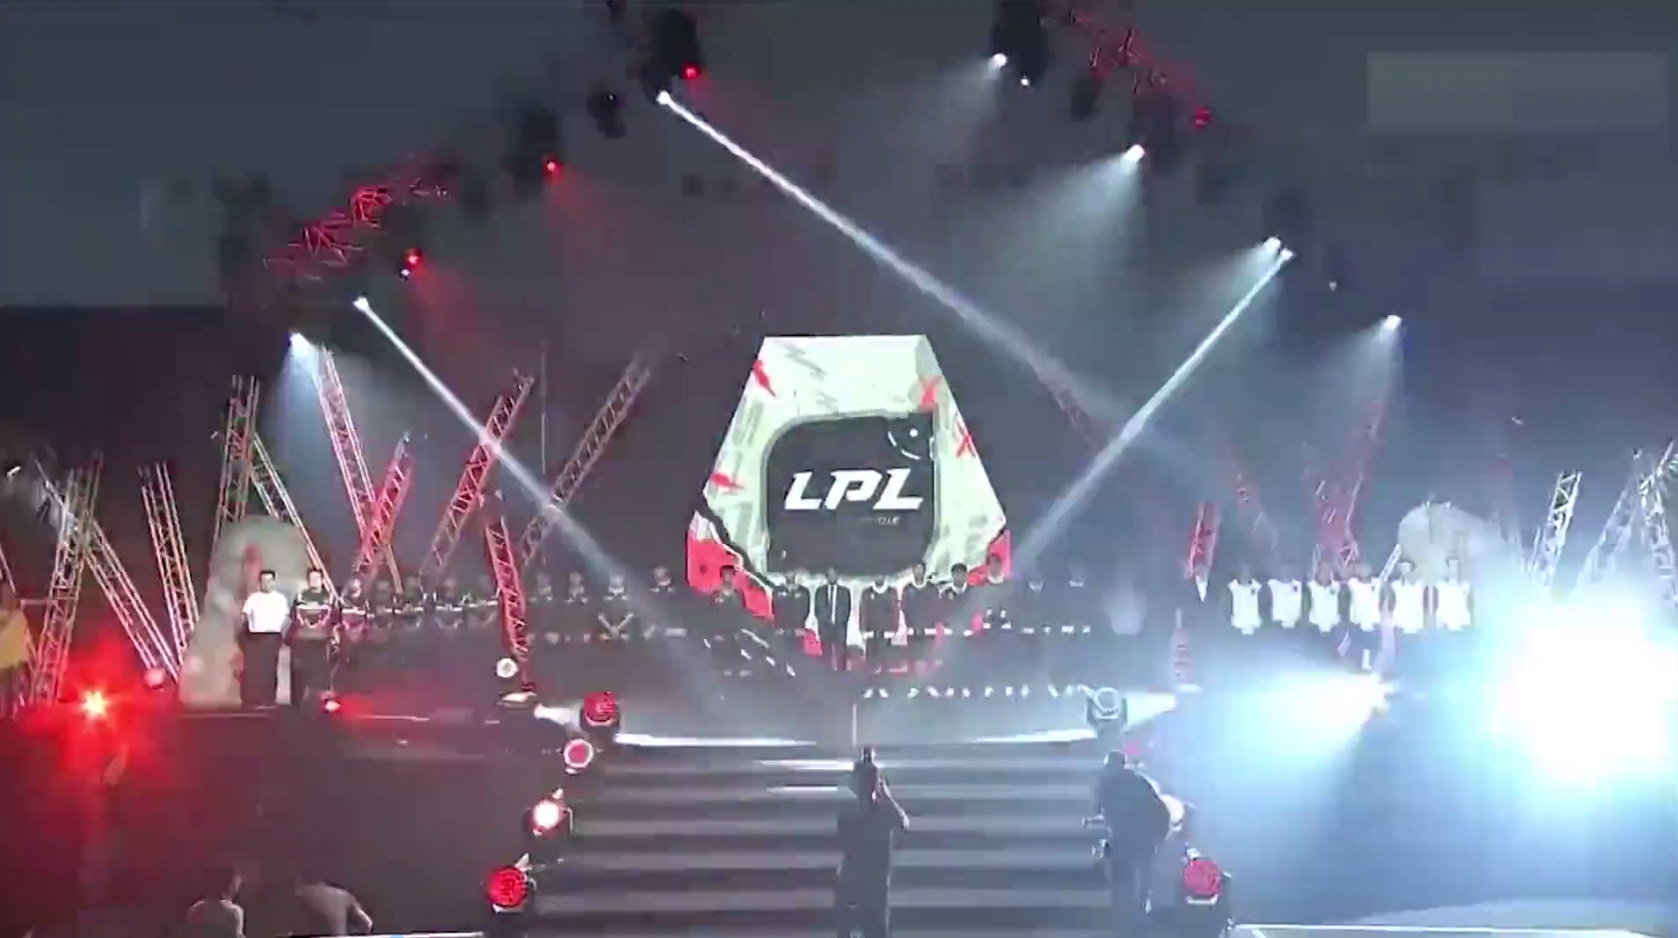 lPL:英雄联盟职业联赛宣传片，中国大陆最高级别的英雄联盟职业比赛